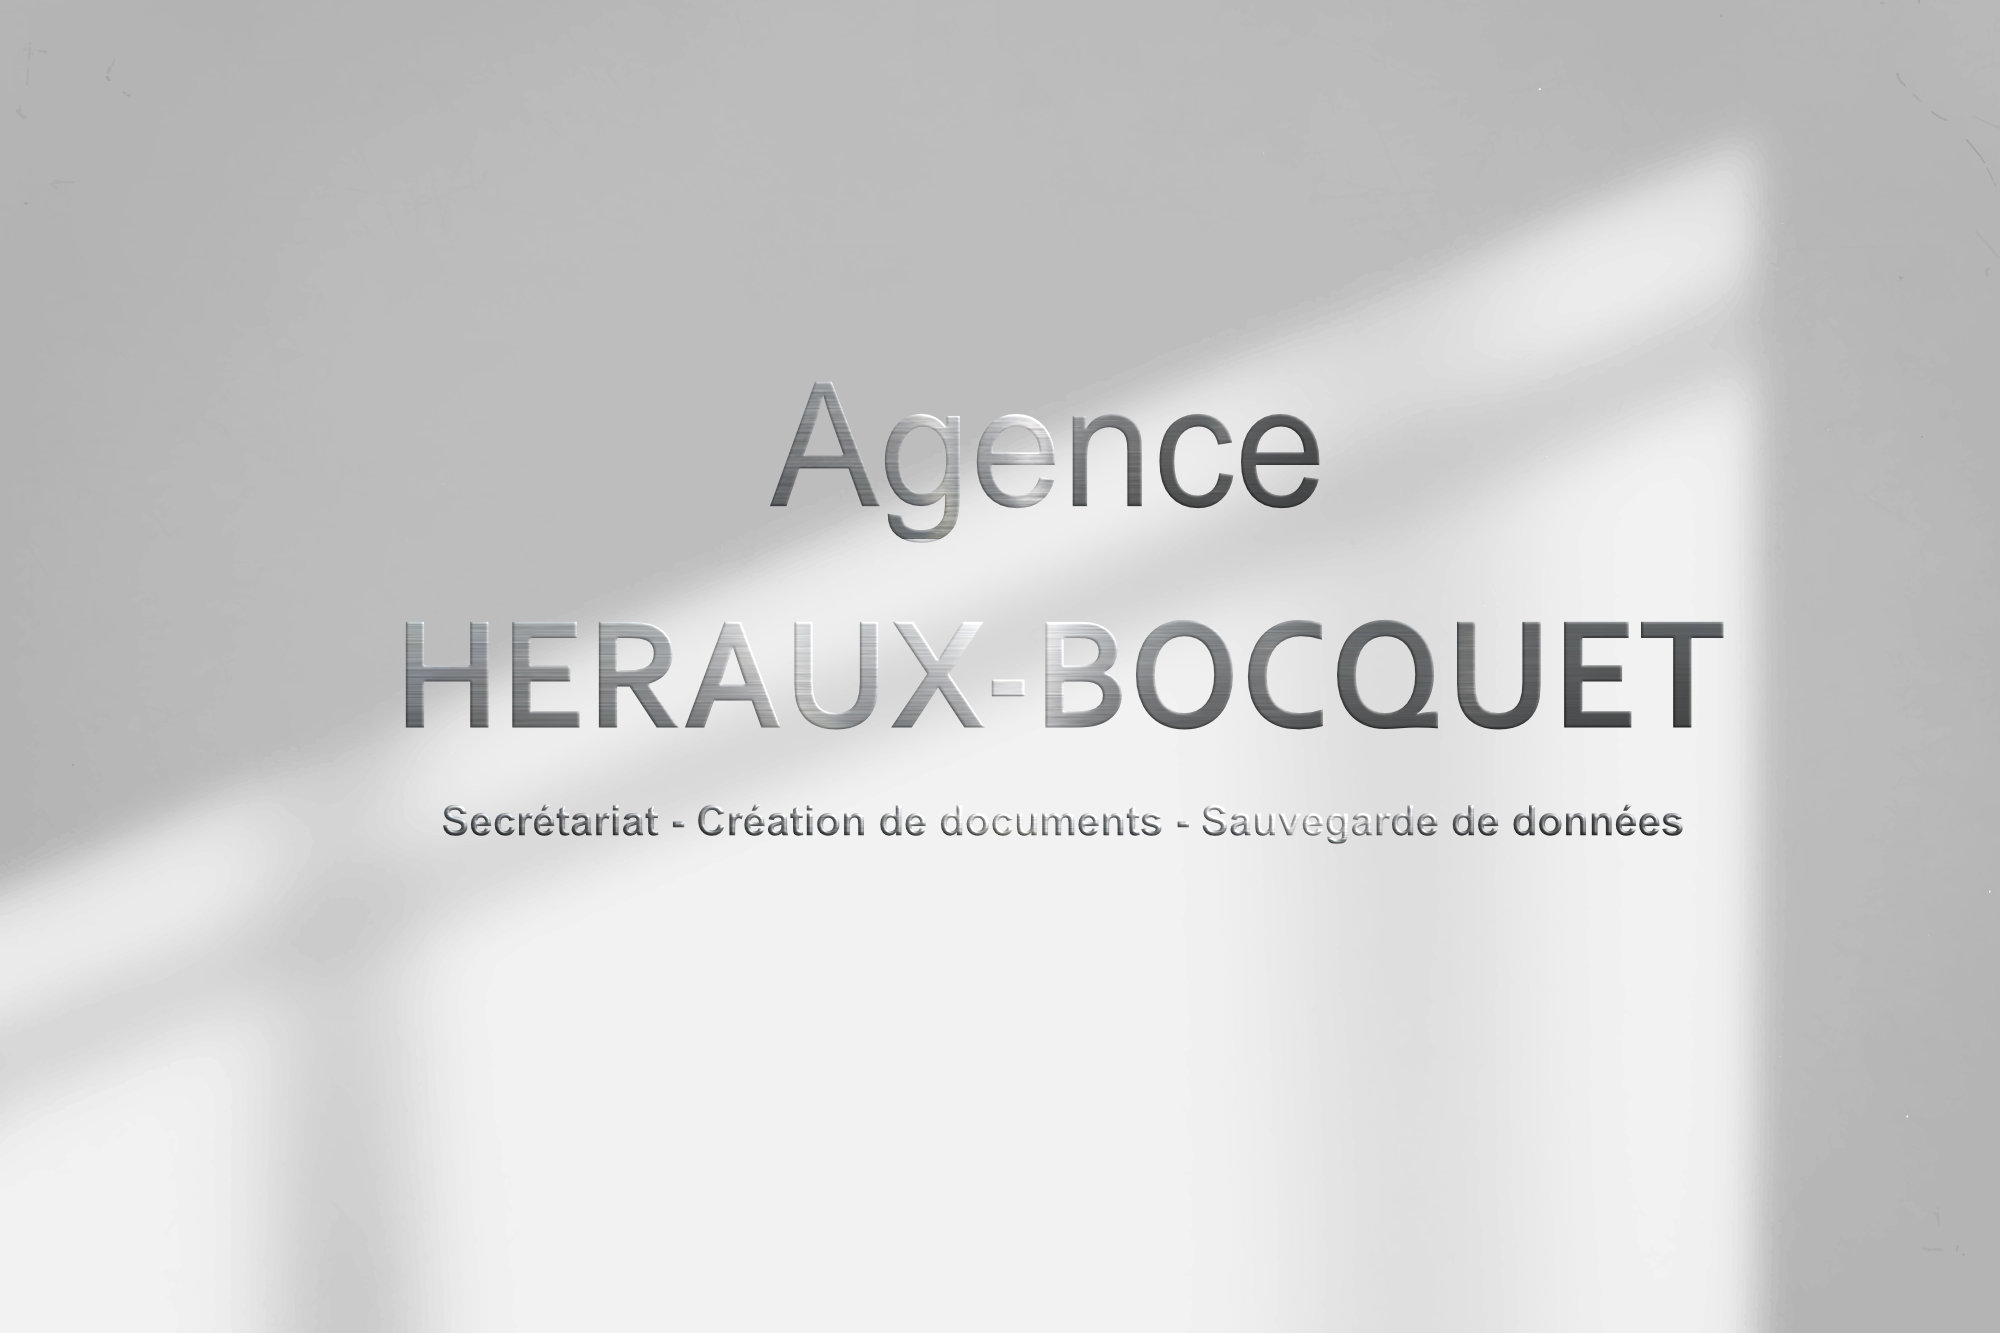 Agence HERAUX-BOCQUET - Secrétariat